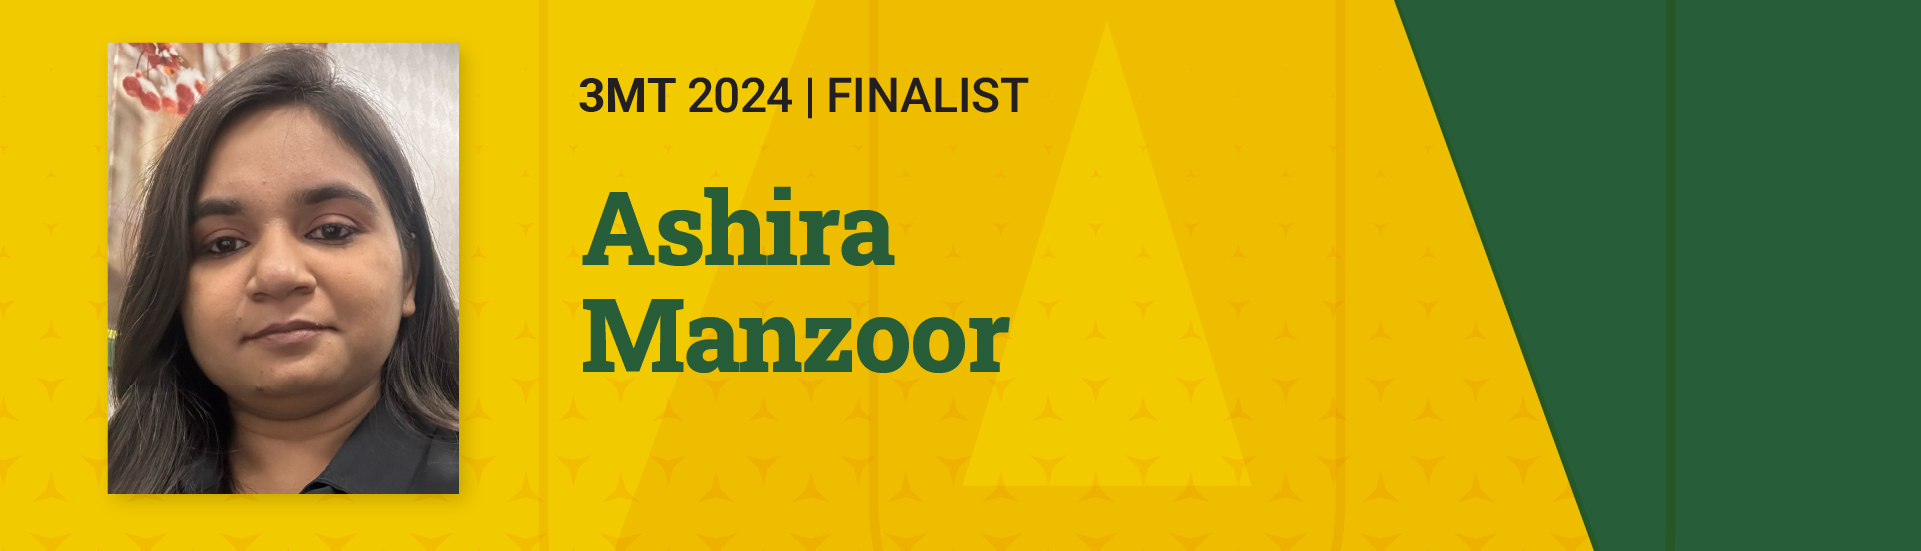 3MT 2024 Finalist Ashira Manzoor